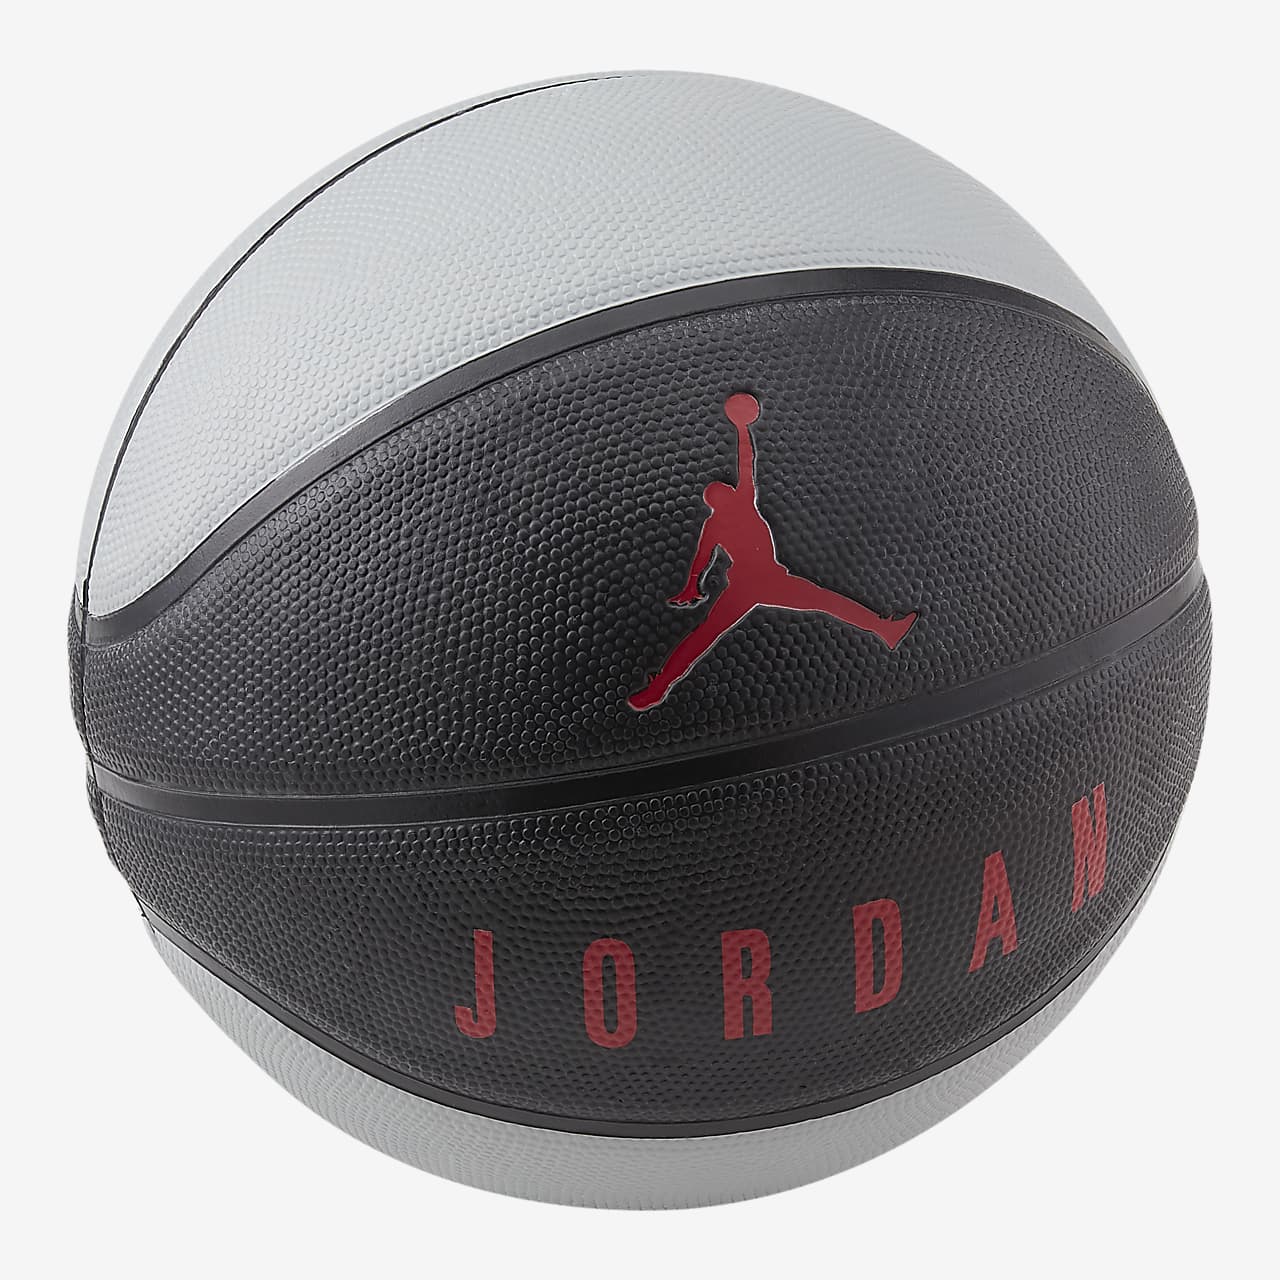 Jordan Playground 8P Basketball. Nike.com